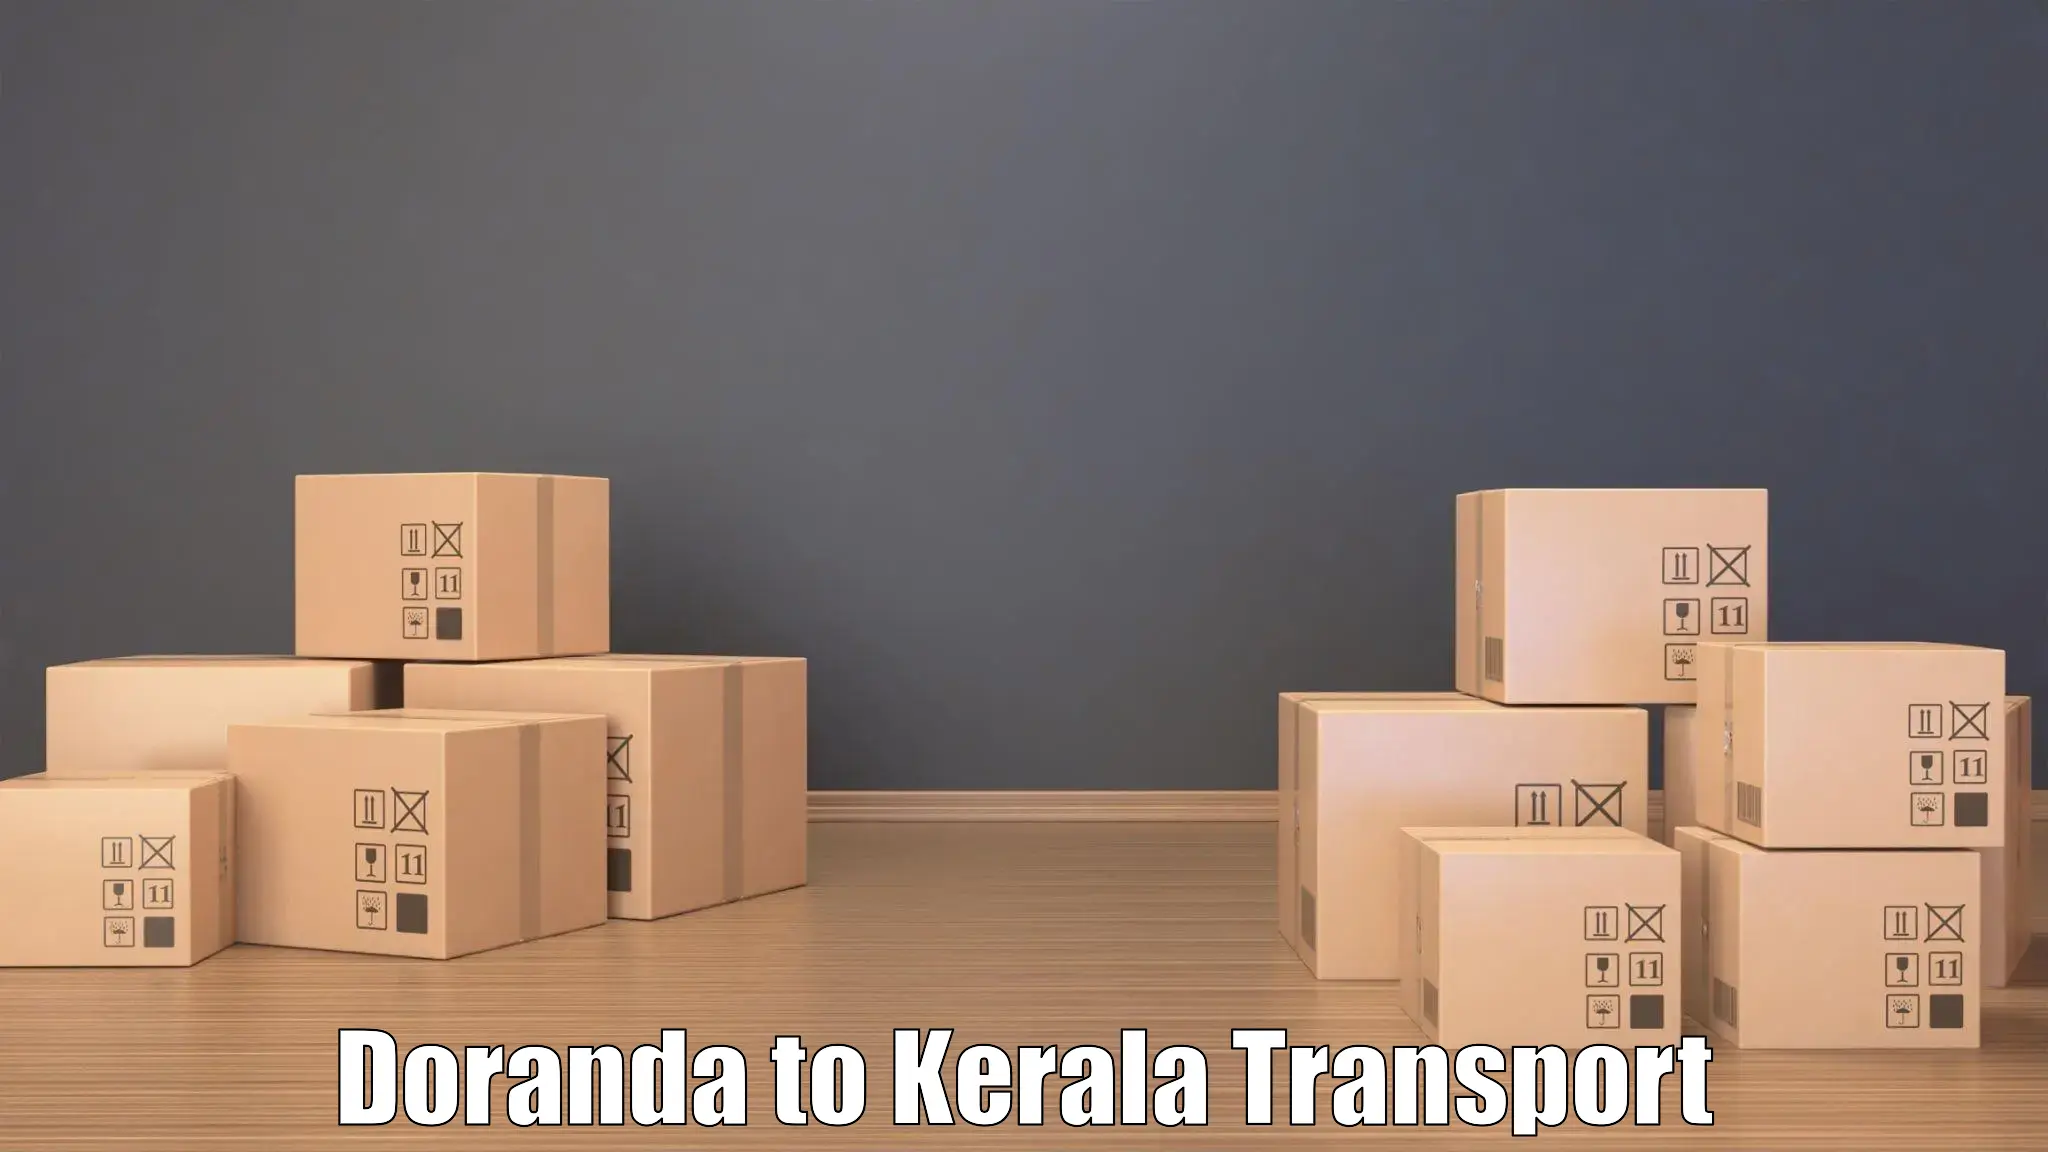 Logistics transportation services Doranda to Malappuram